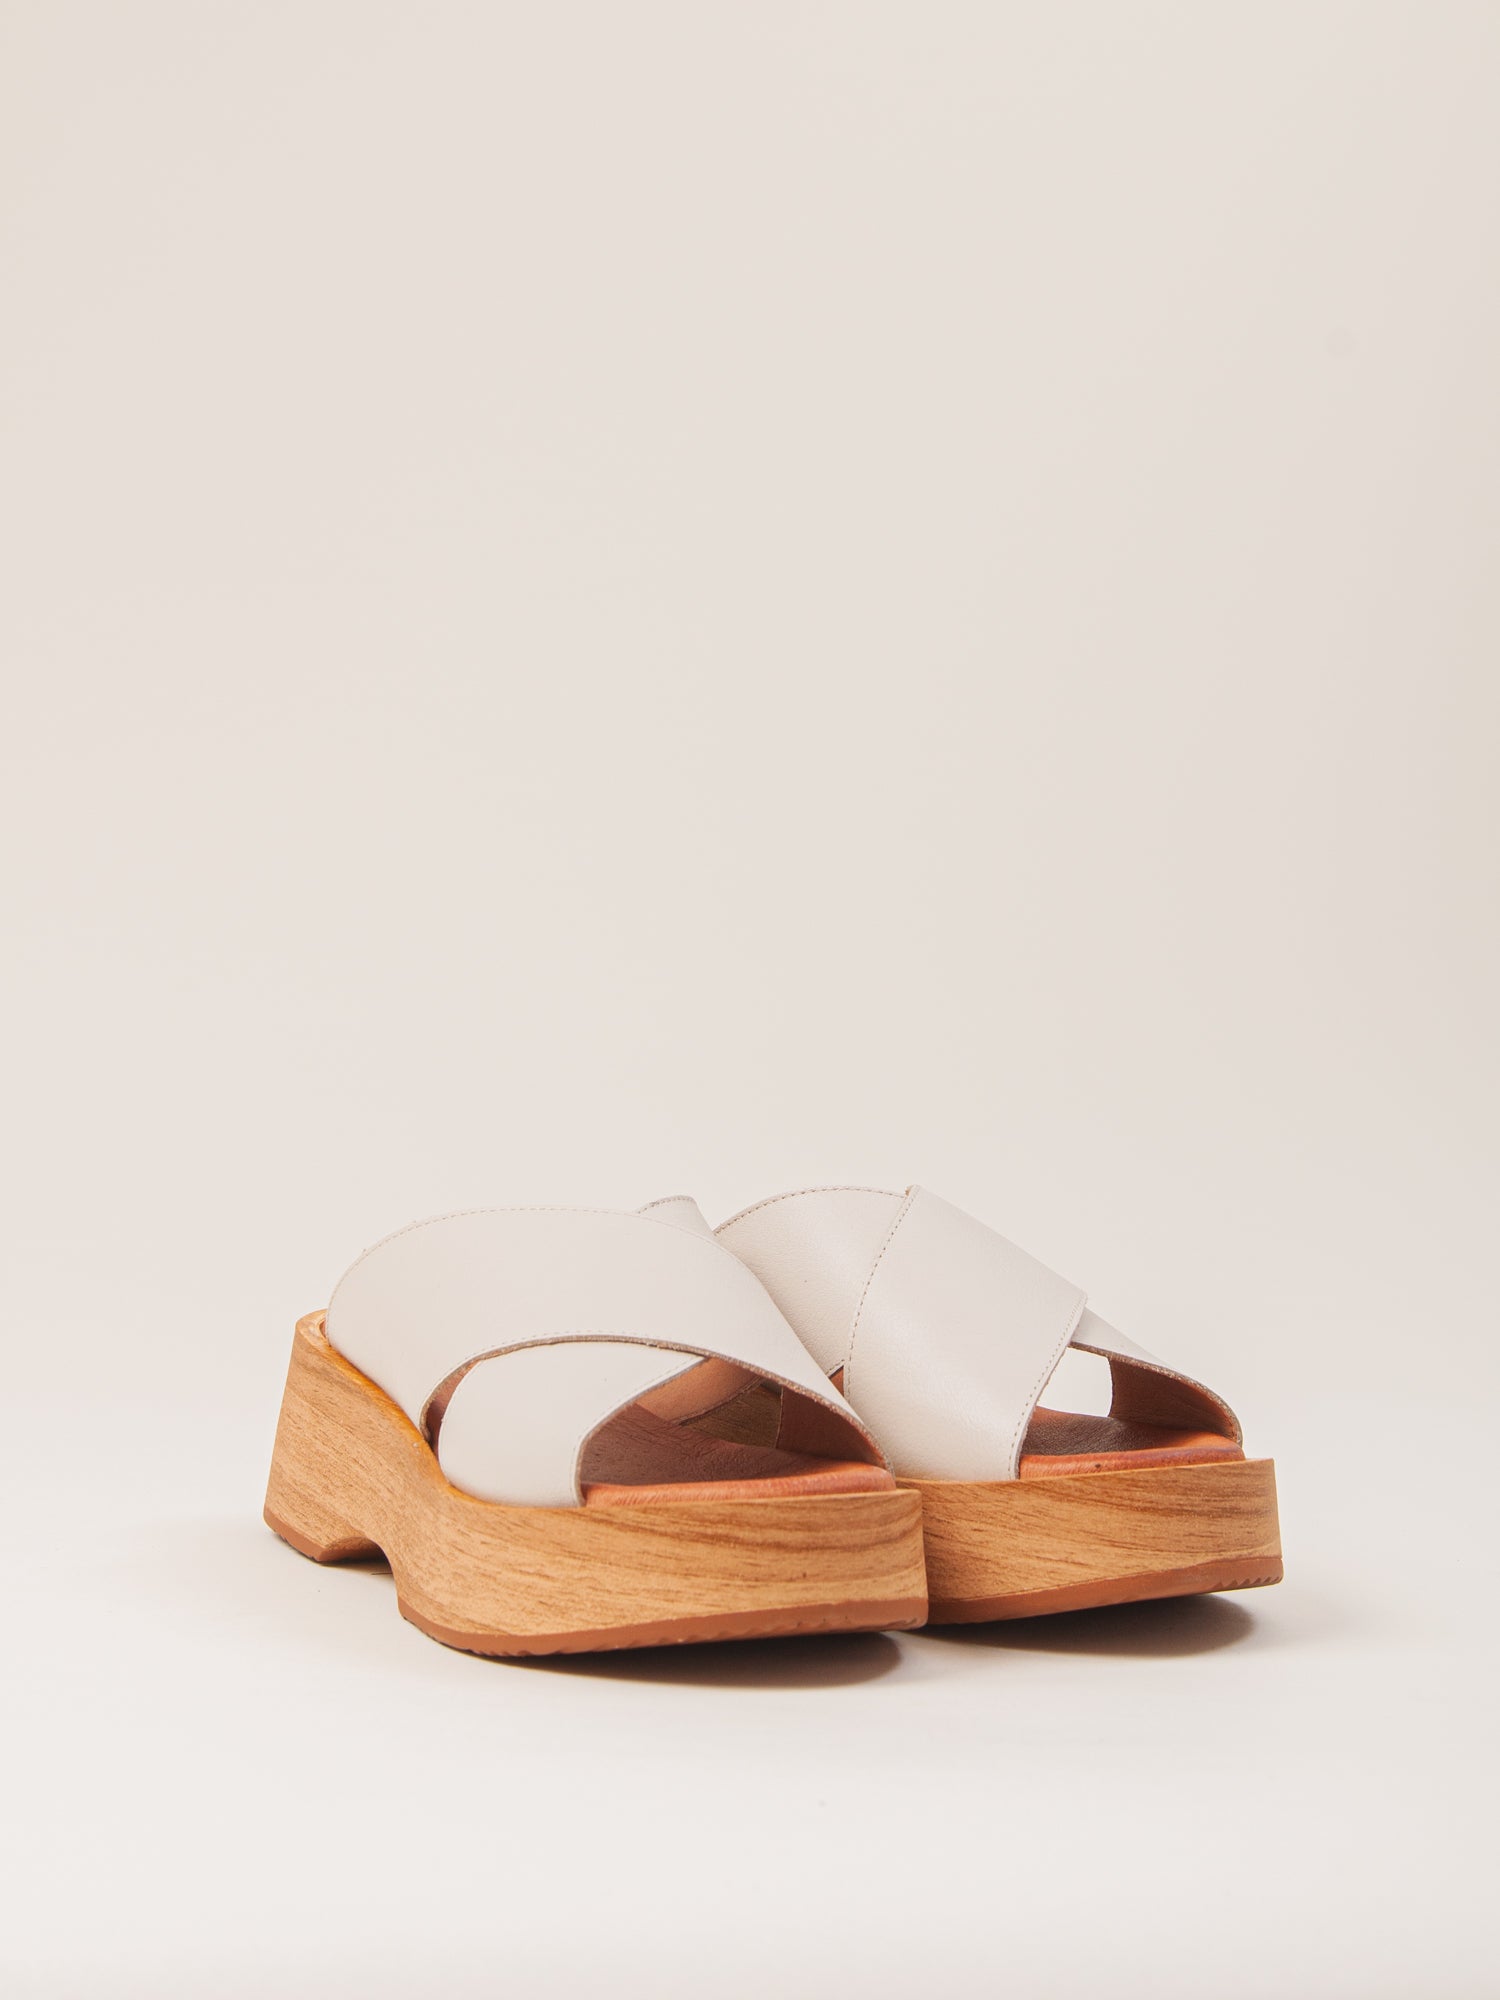 Sandalia blanca de mujer. Sandalia de plataforma de piel natural. Sandalia cómoda y ligera